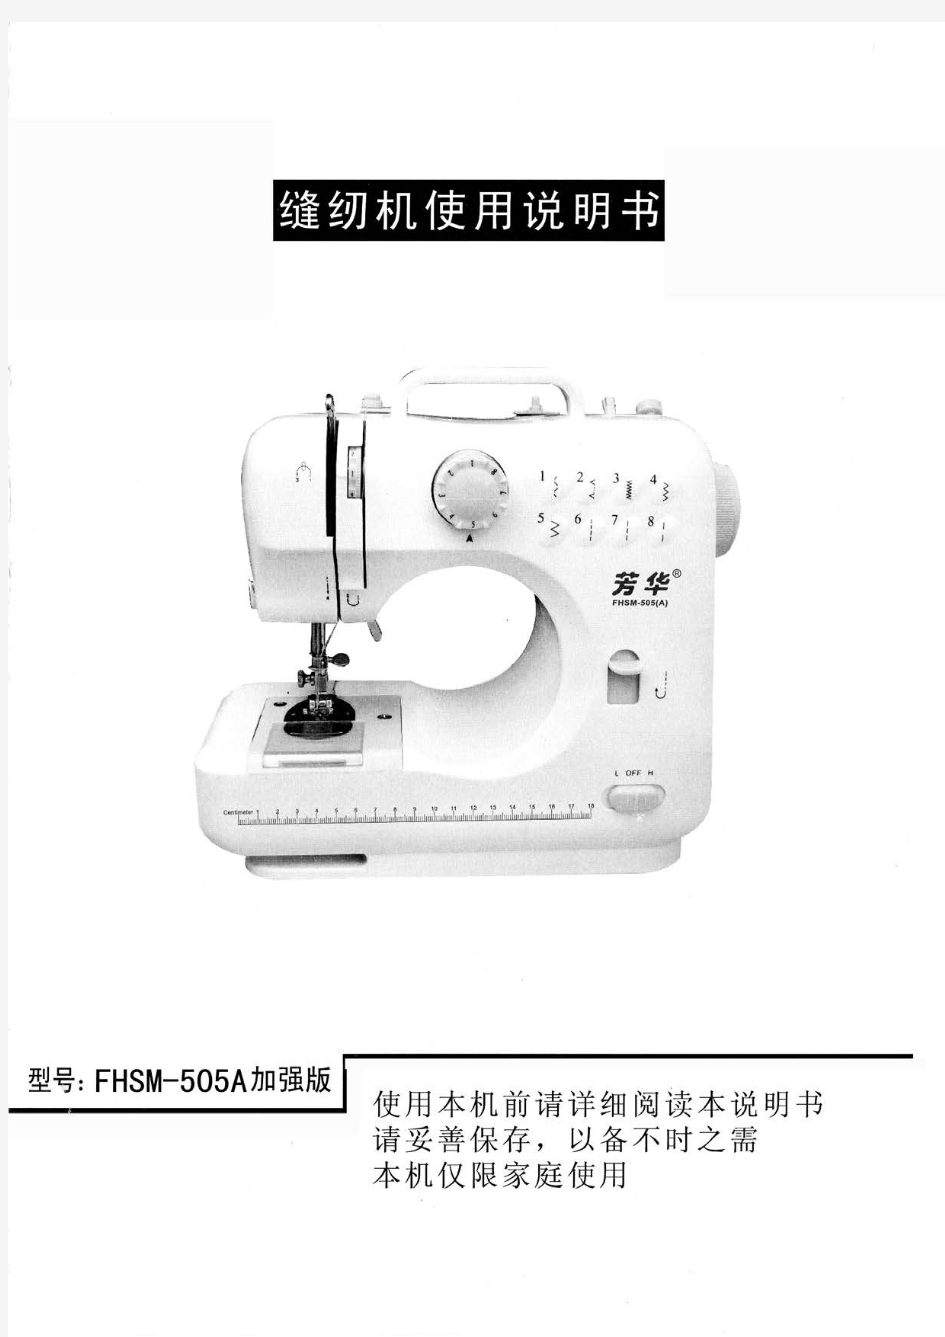 芳华505A缝纫机说明书